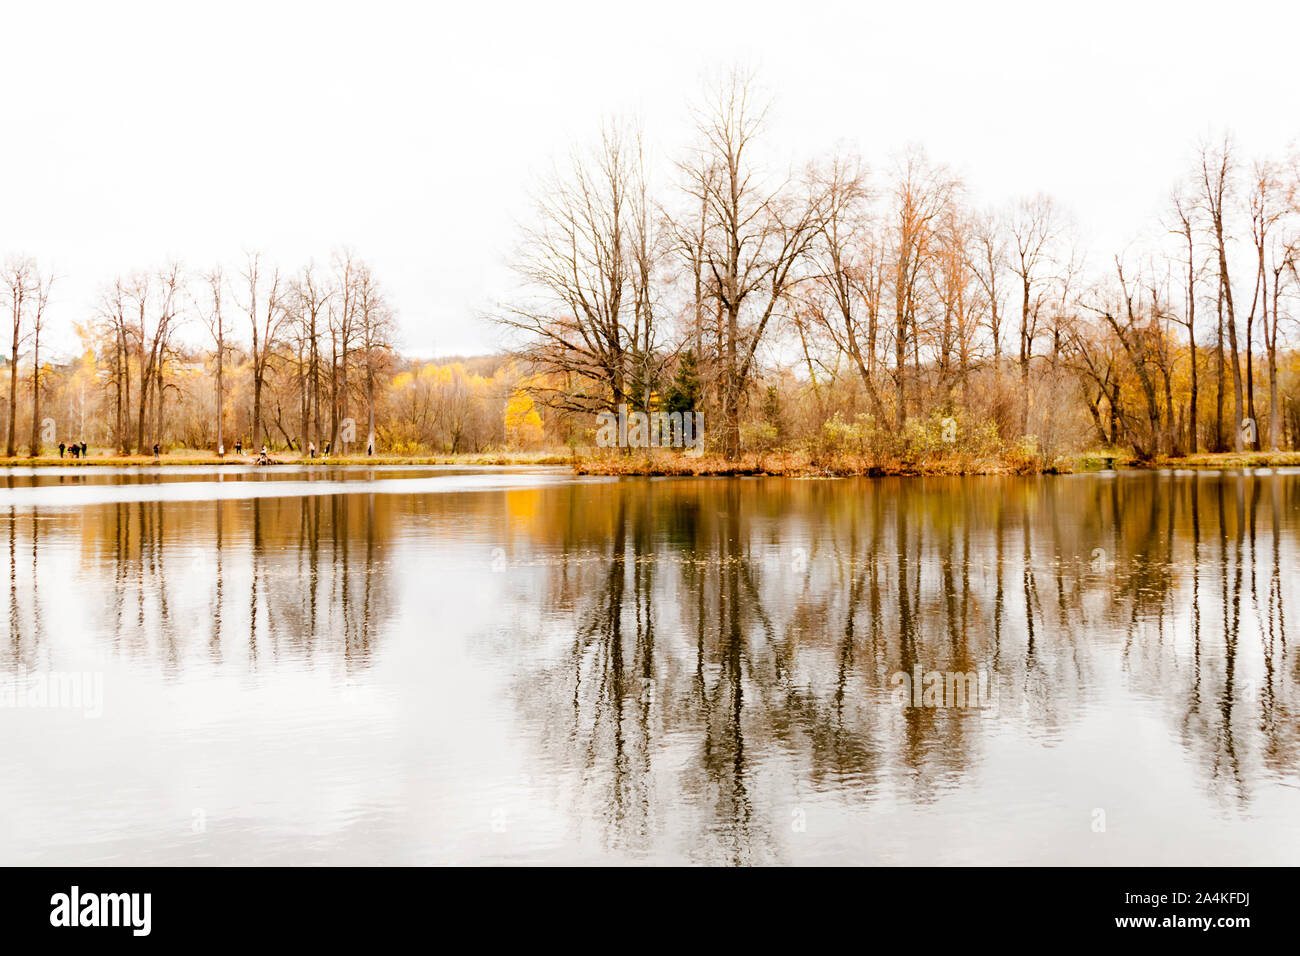 Russland, Moscow Region - Oktober 13, 2019: schöne herbstliche Blick auf Teich in Manor in Serednikovo Firsanovka. Der goldene Herbst Bäume sich in Th Stockfoto